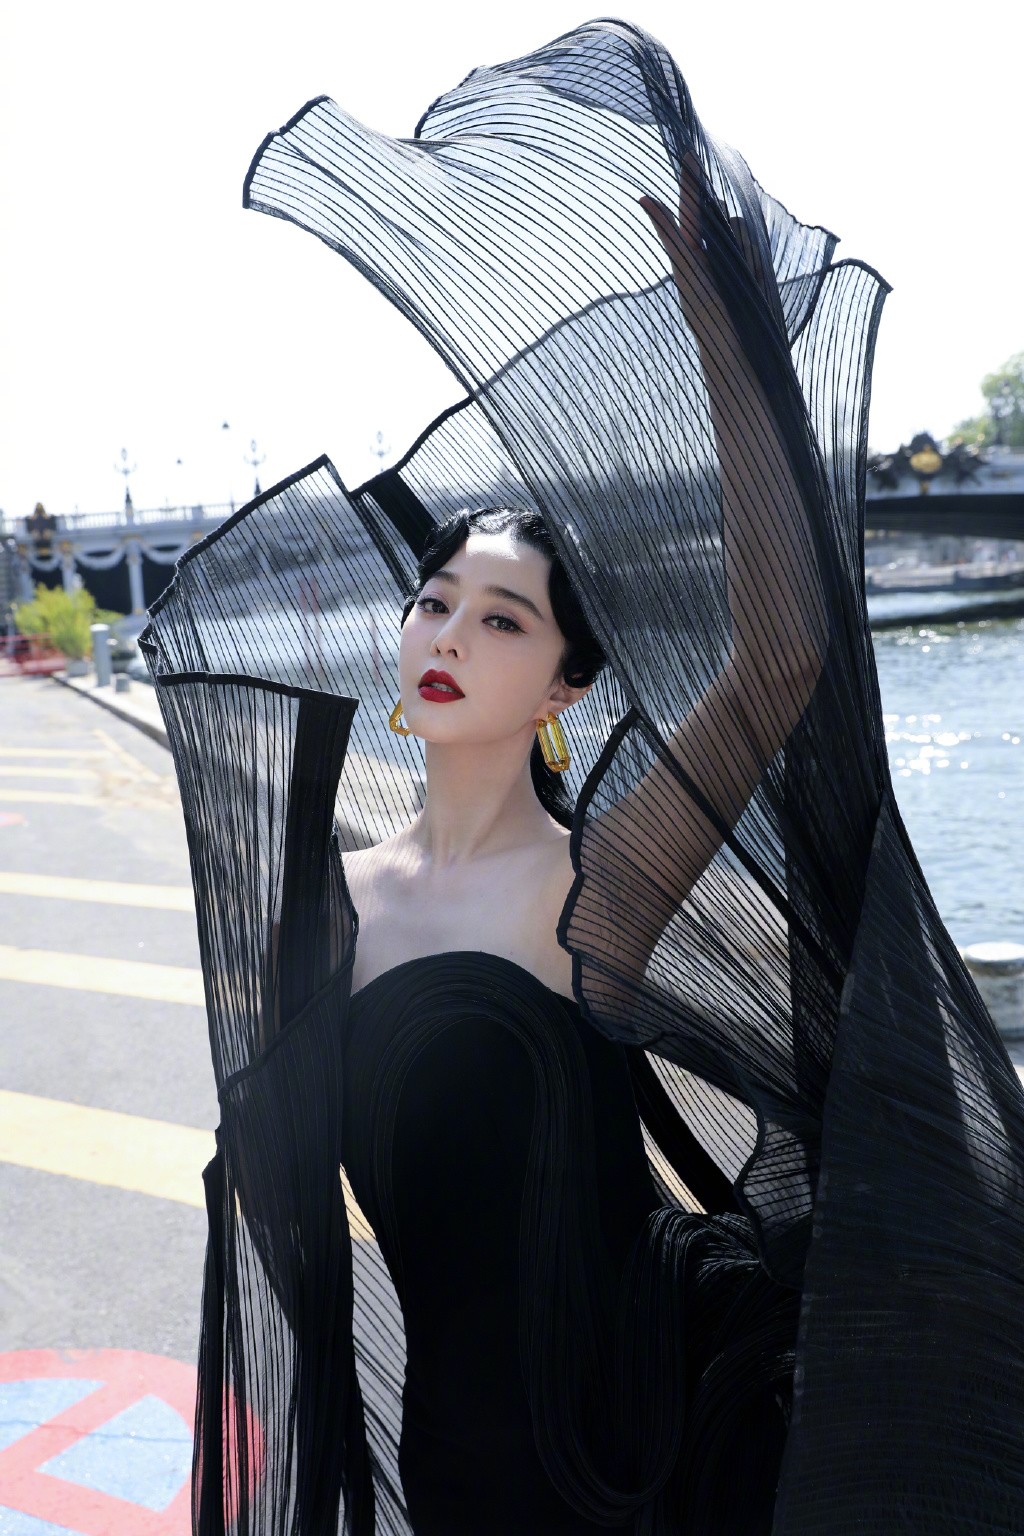 Phạm Băng Băng hiện là gương mặt châu Á được nhiều thương hiệu quốc tế mời dự show thời trang.